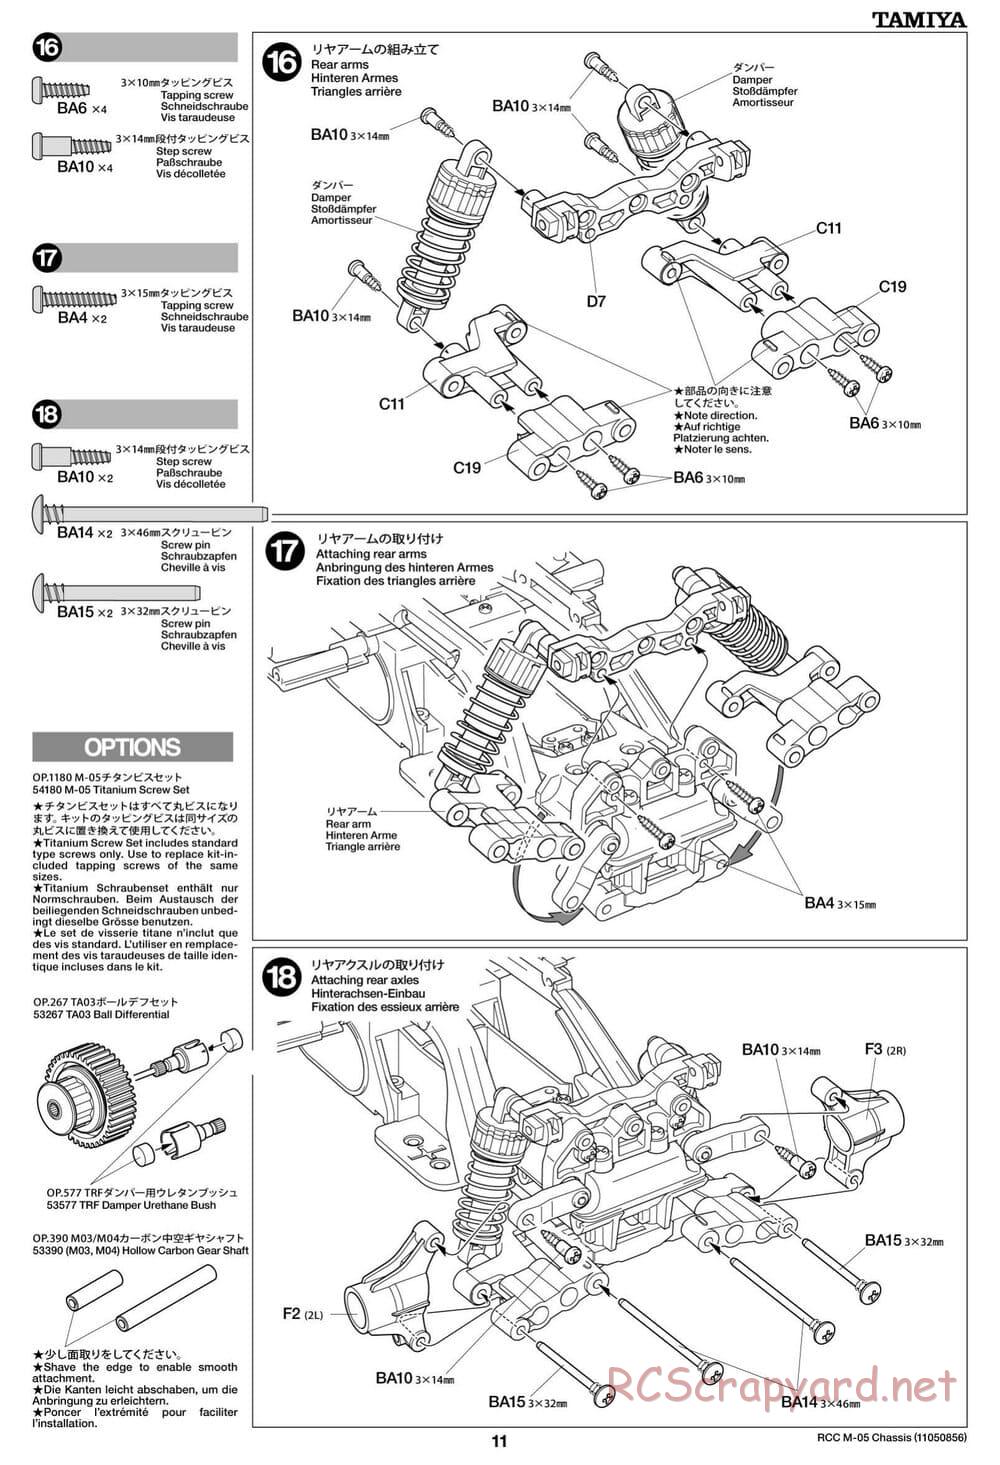 Tamiya - M-05 Chassis - Manual - Page 11